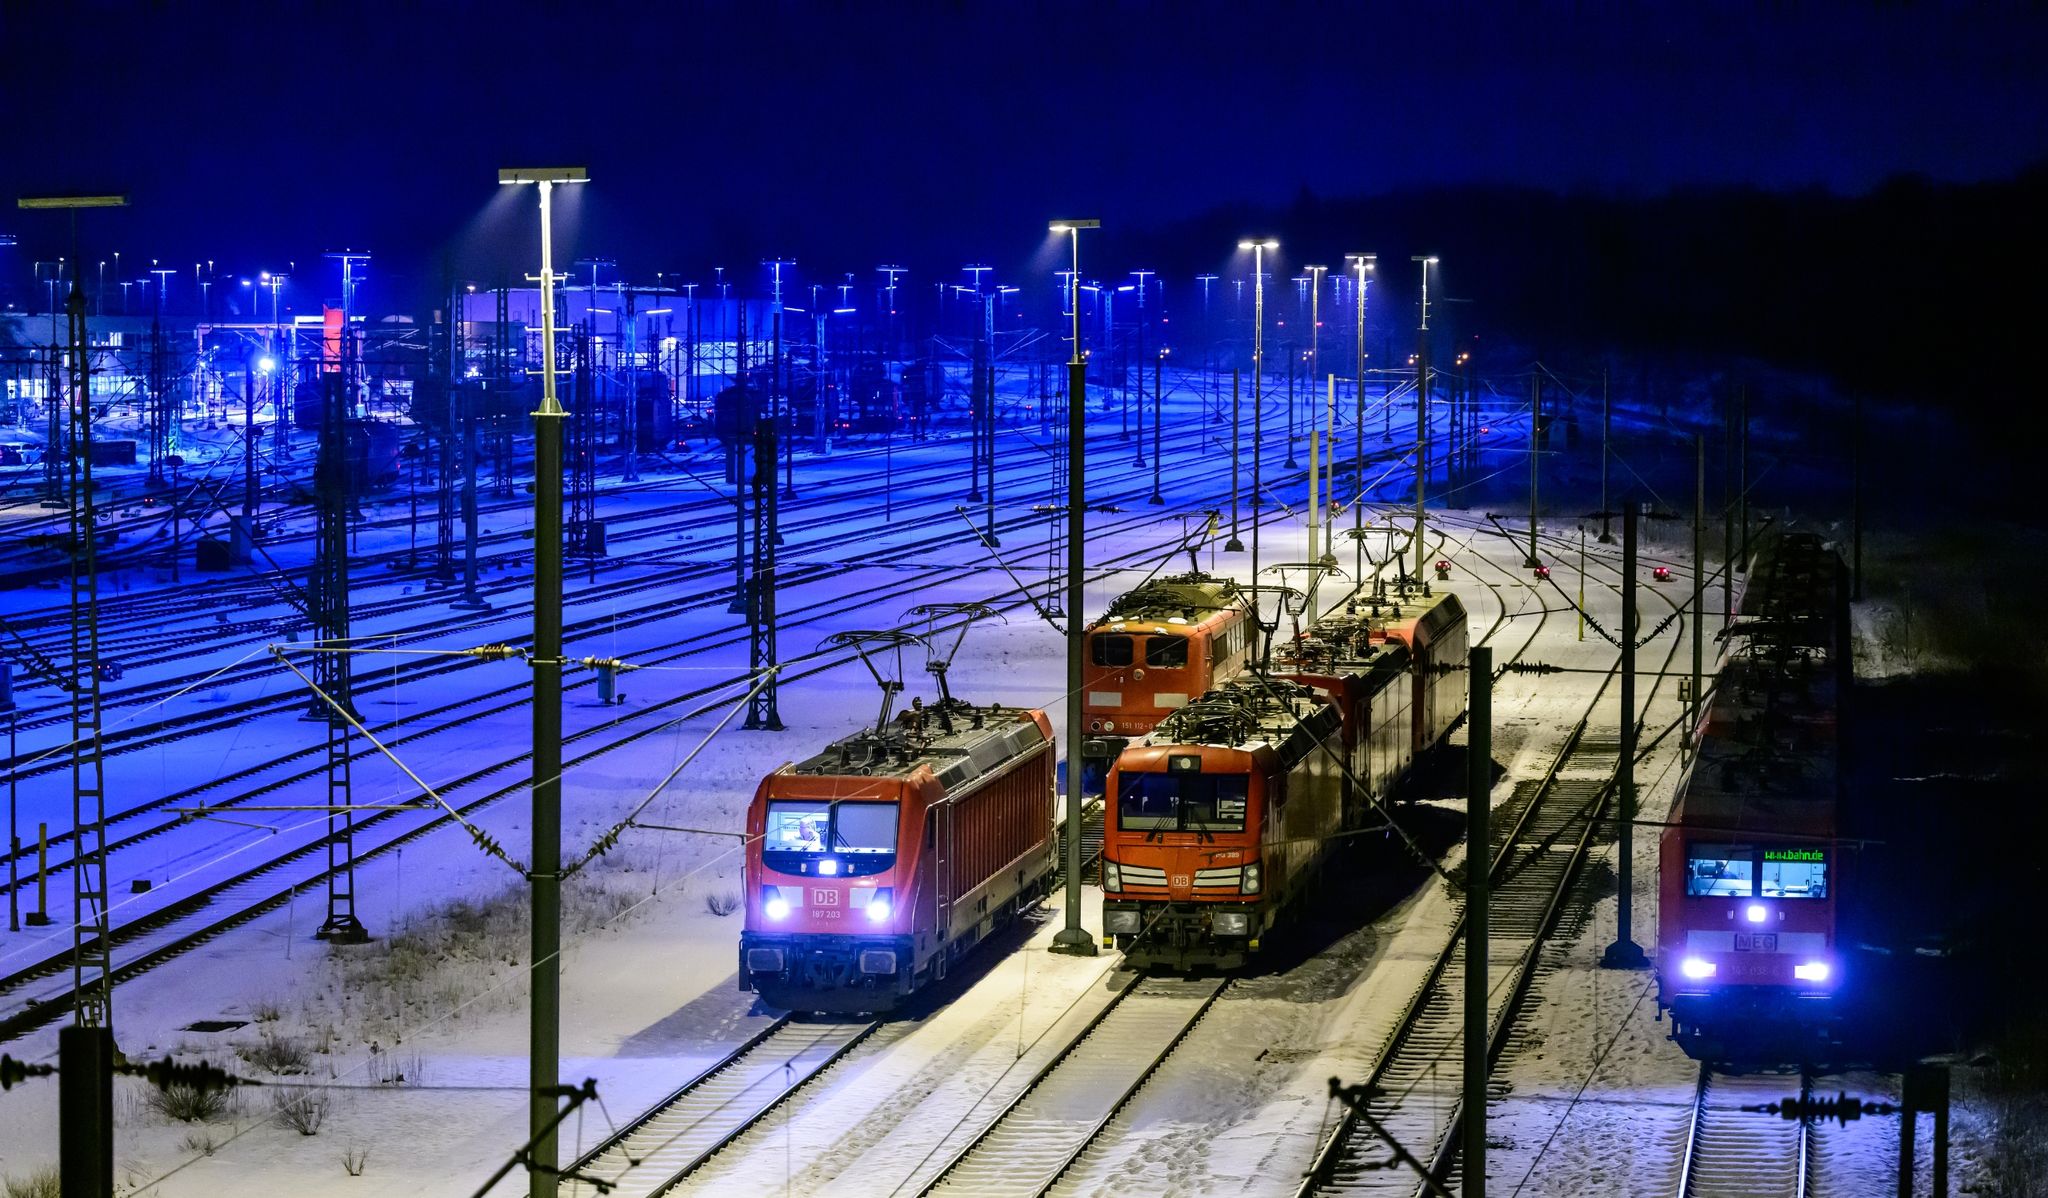 Der Streik der Lokführergewerkschaft GDL kann wie geplant stattfinden. Das Hessische Landesarbeitsgericht in Frankfurt hat einen Antrag der Deutschen Bahn auf eine Einstweilige Verfügung gegen den Streik abgelehnt.